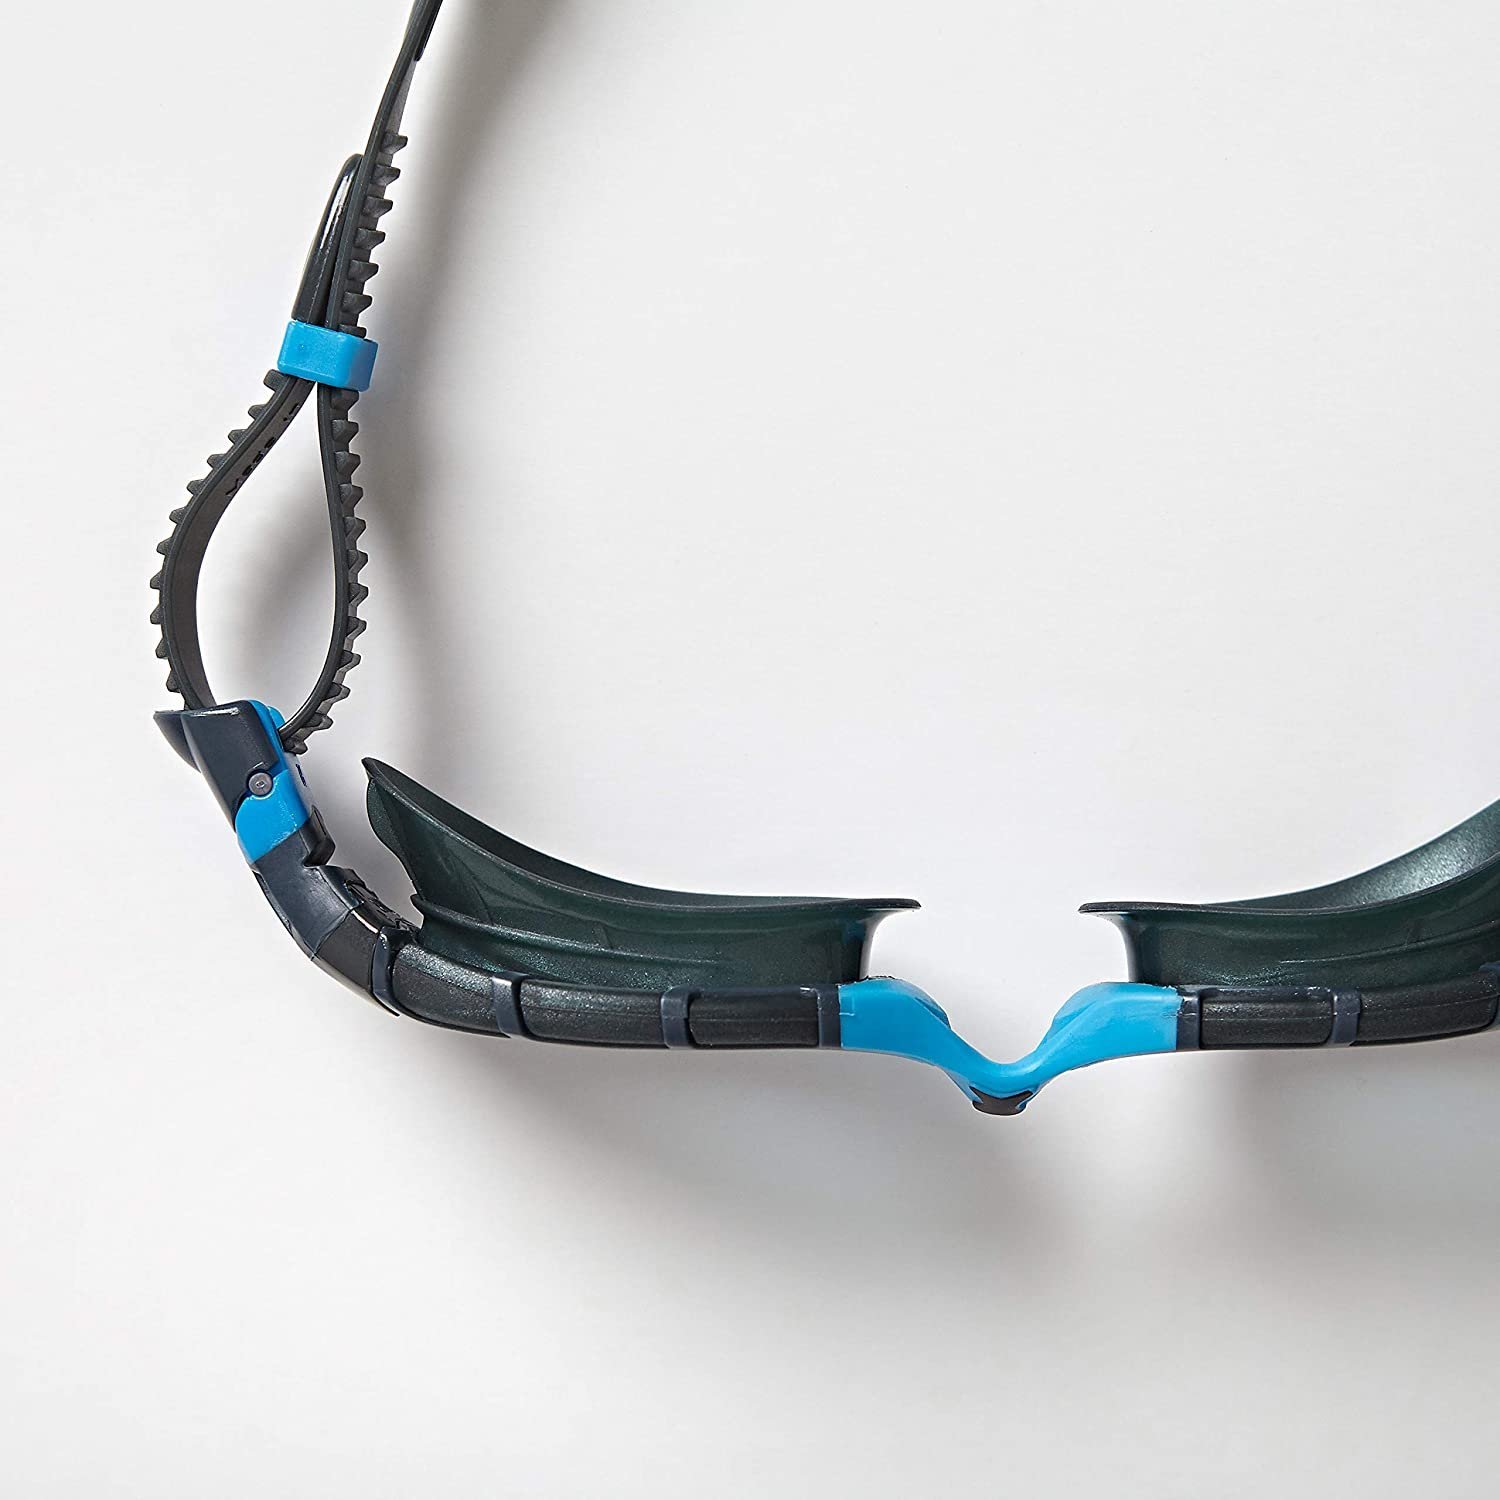 Óculos De Natação Predator Flex (cinzento - Azul) Zoggs | Sport Zone MKP